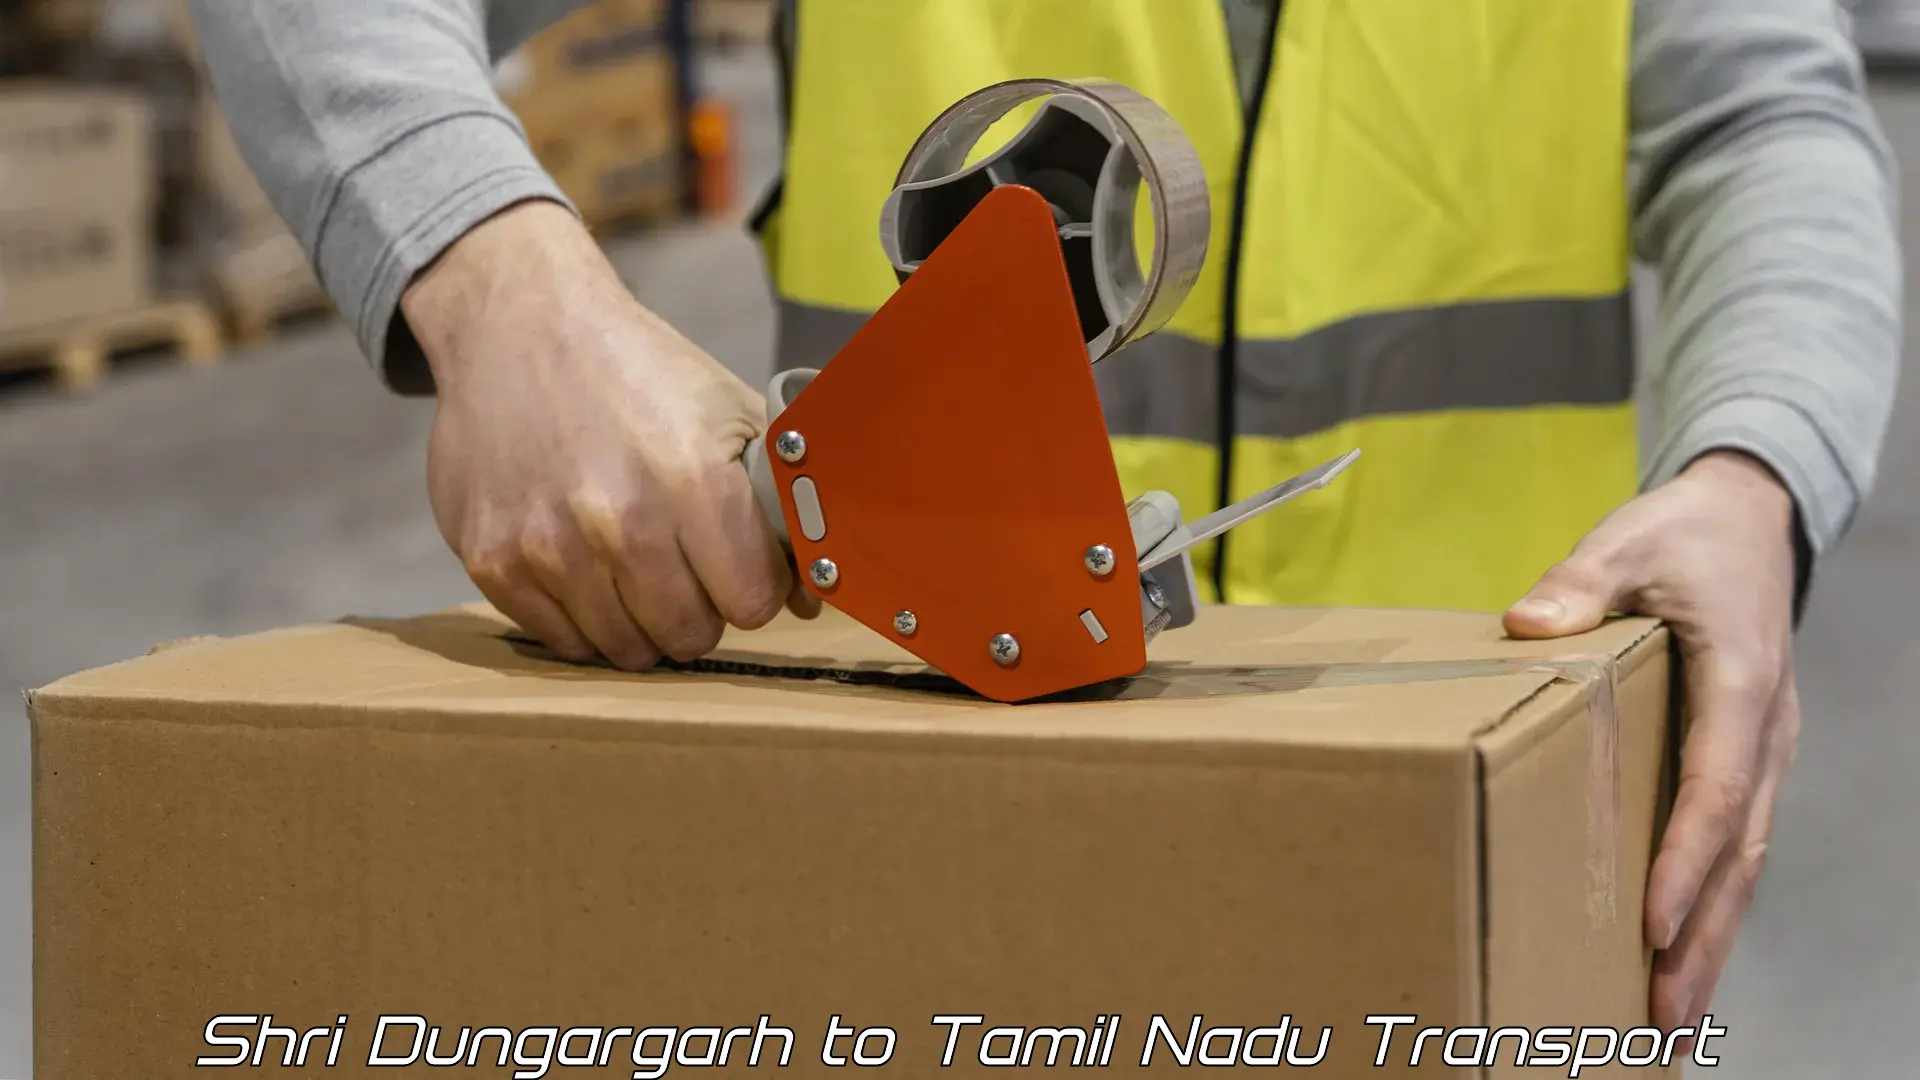 Shipping partner Shri Dungargarh to Cuddalore